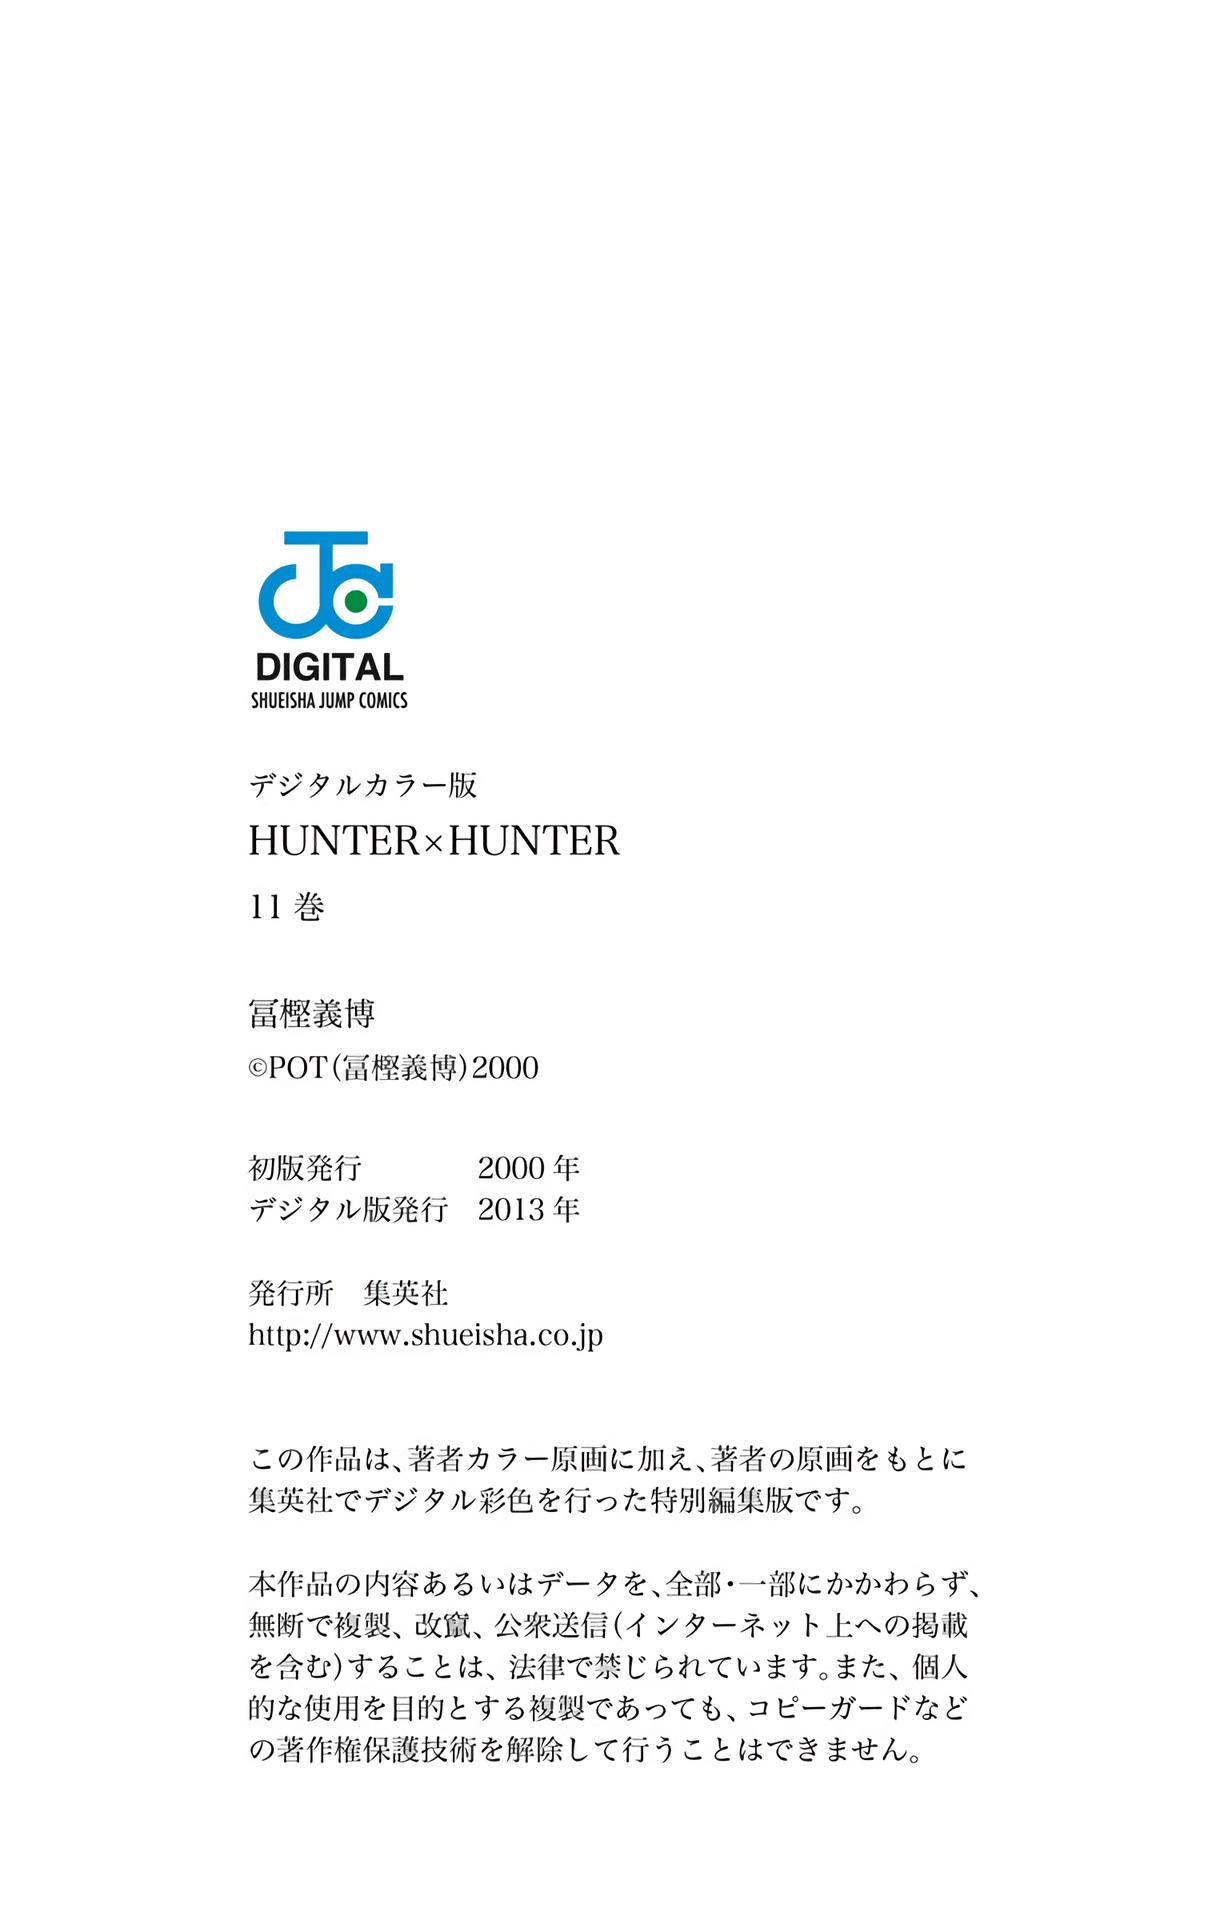 Hunter X Hunter Full Color Chapter 103 Manga Online For Free Myreadingmanga Link